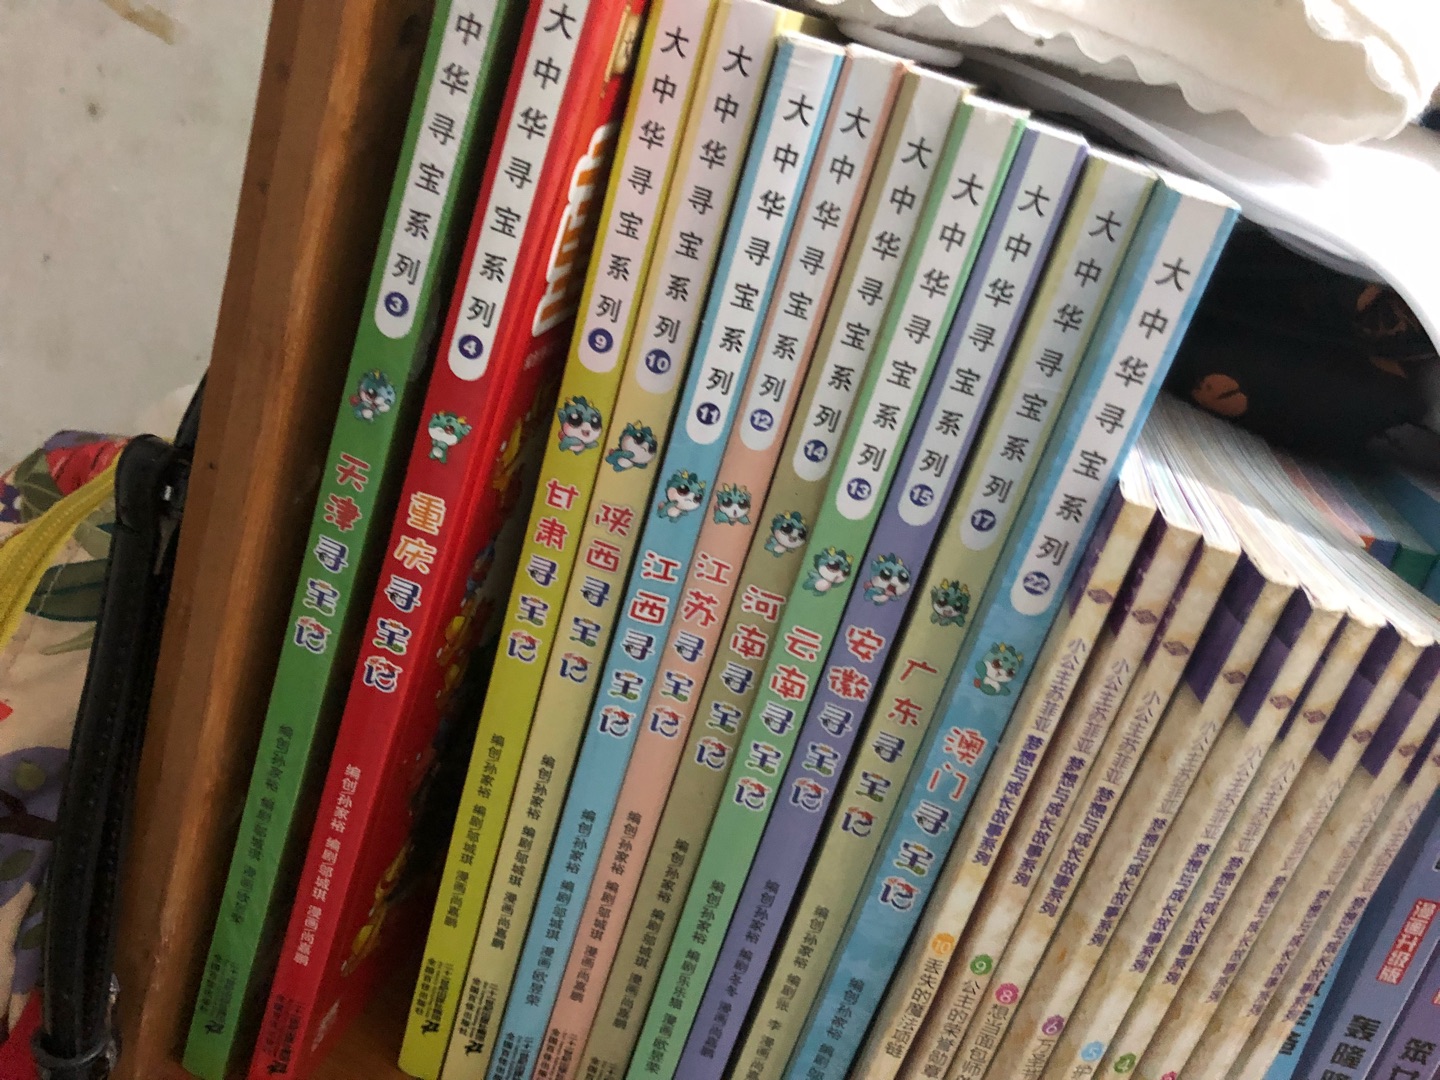 这是河南寻宝记系列的 书籍是人类的最重要的朋友 所以孩子们喜欢看就买齐这一系列的产品